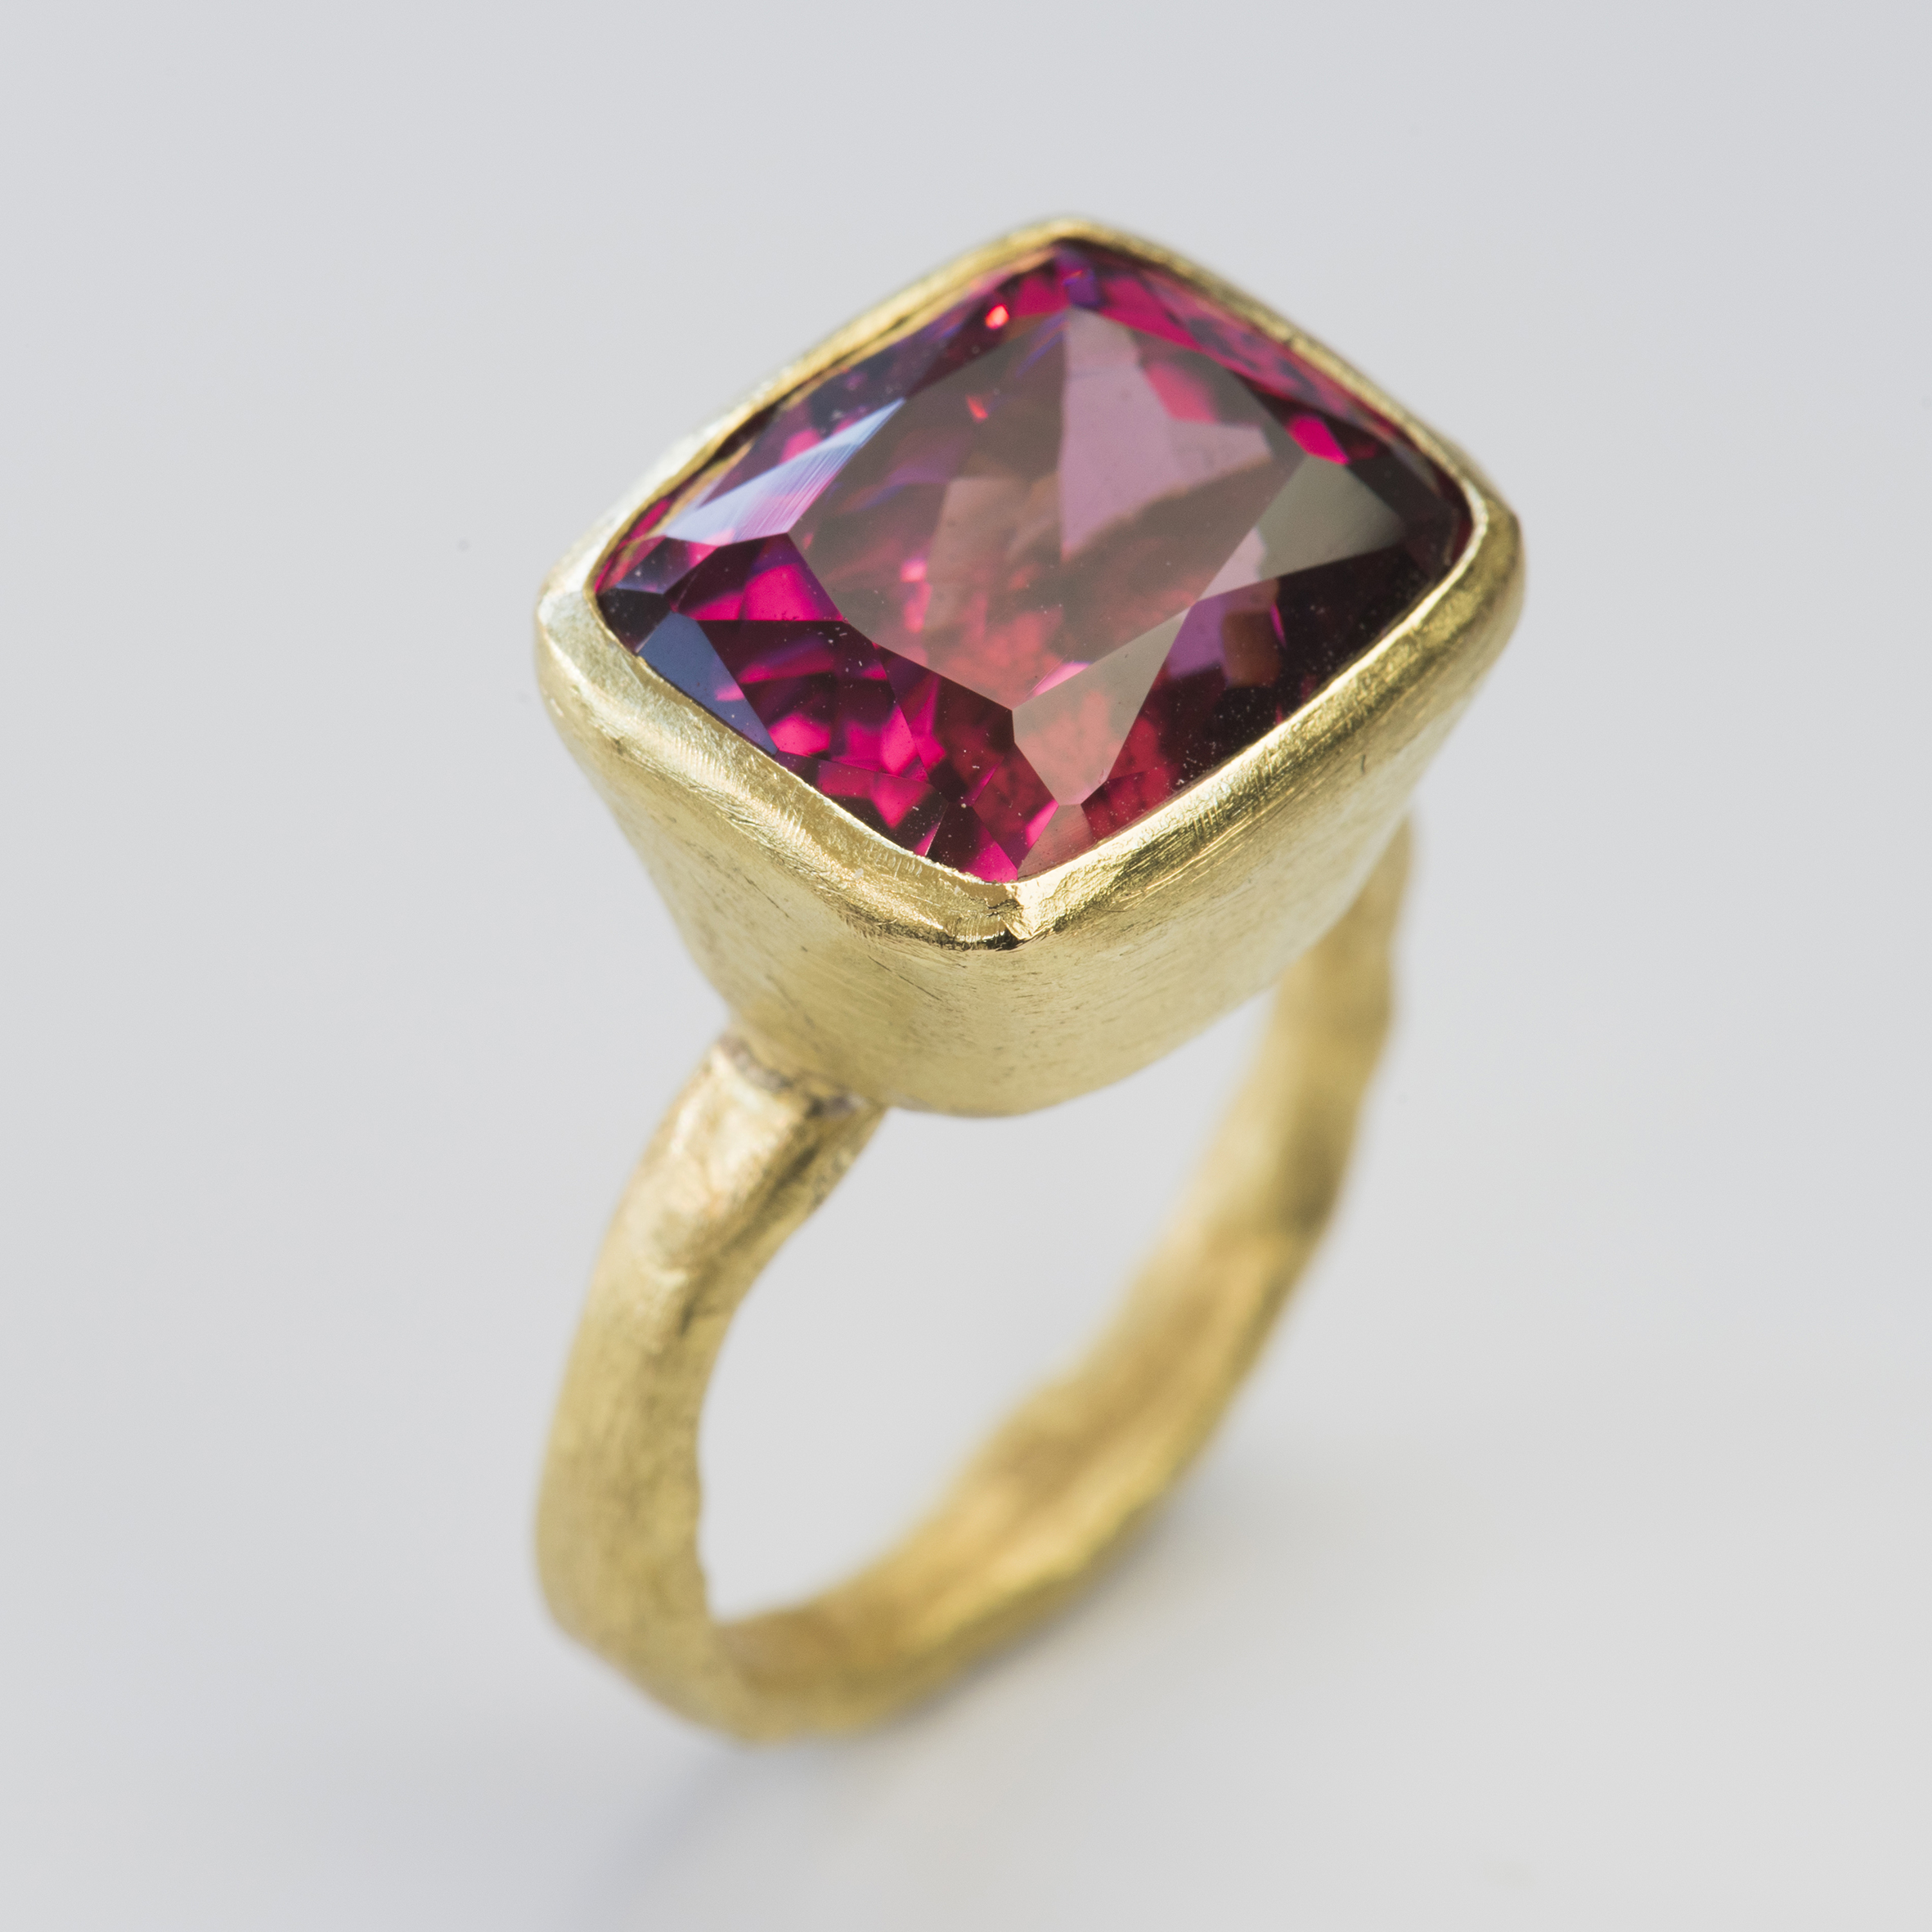 Raspberry Rhodolite Garnet Ring Featured on Disa Allsopp 1st Dibs Online Store